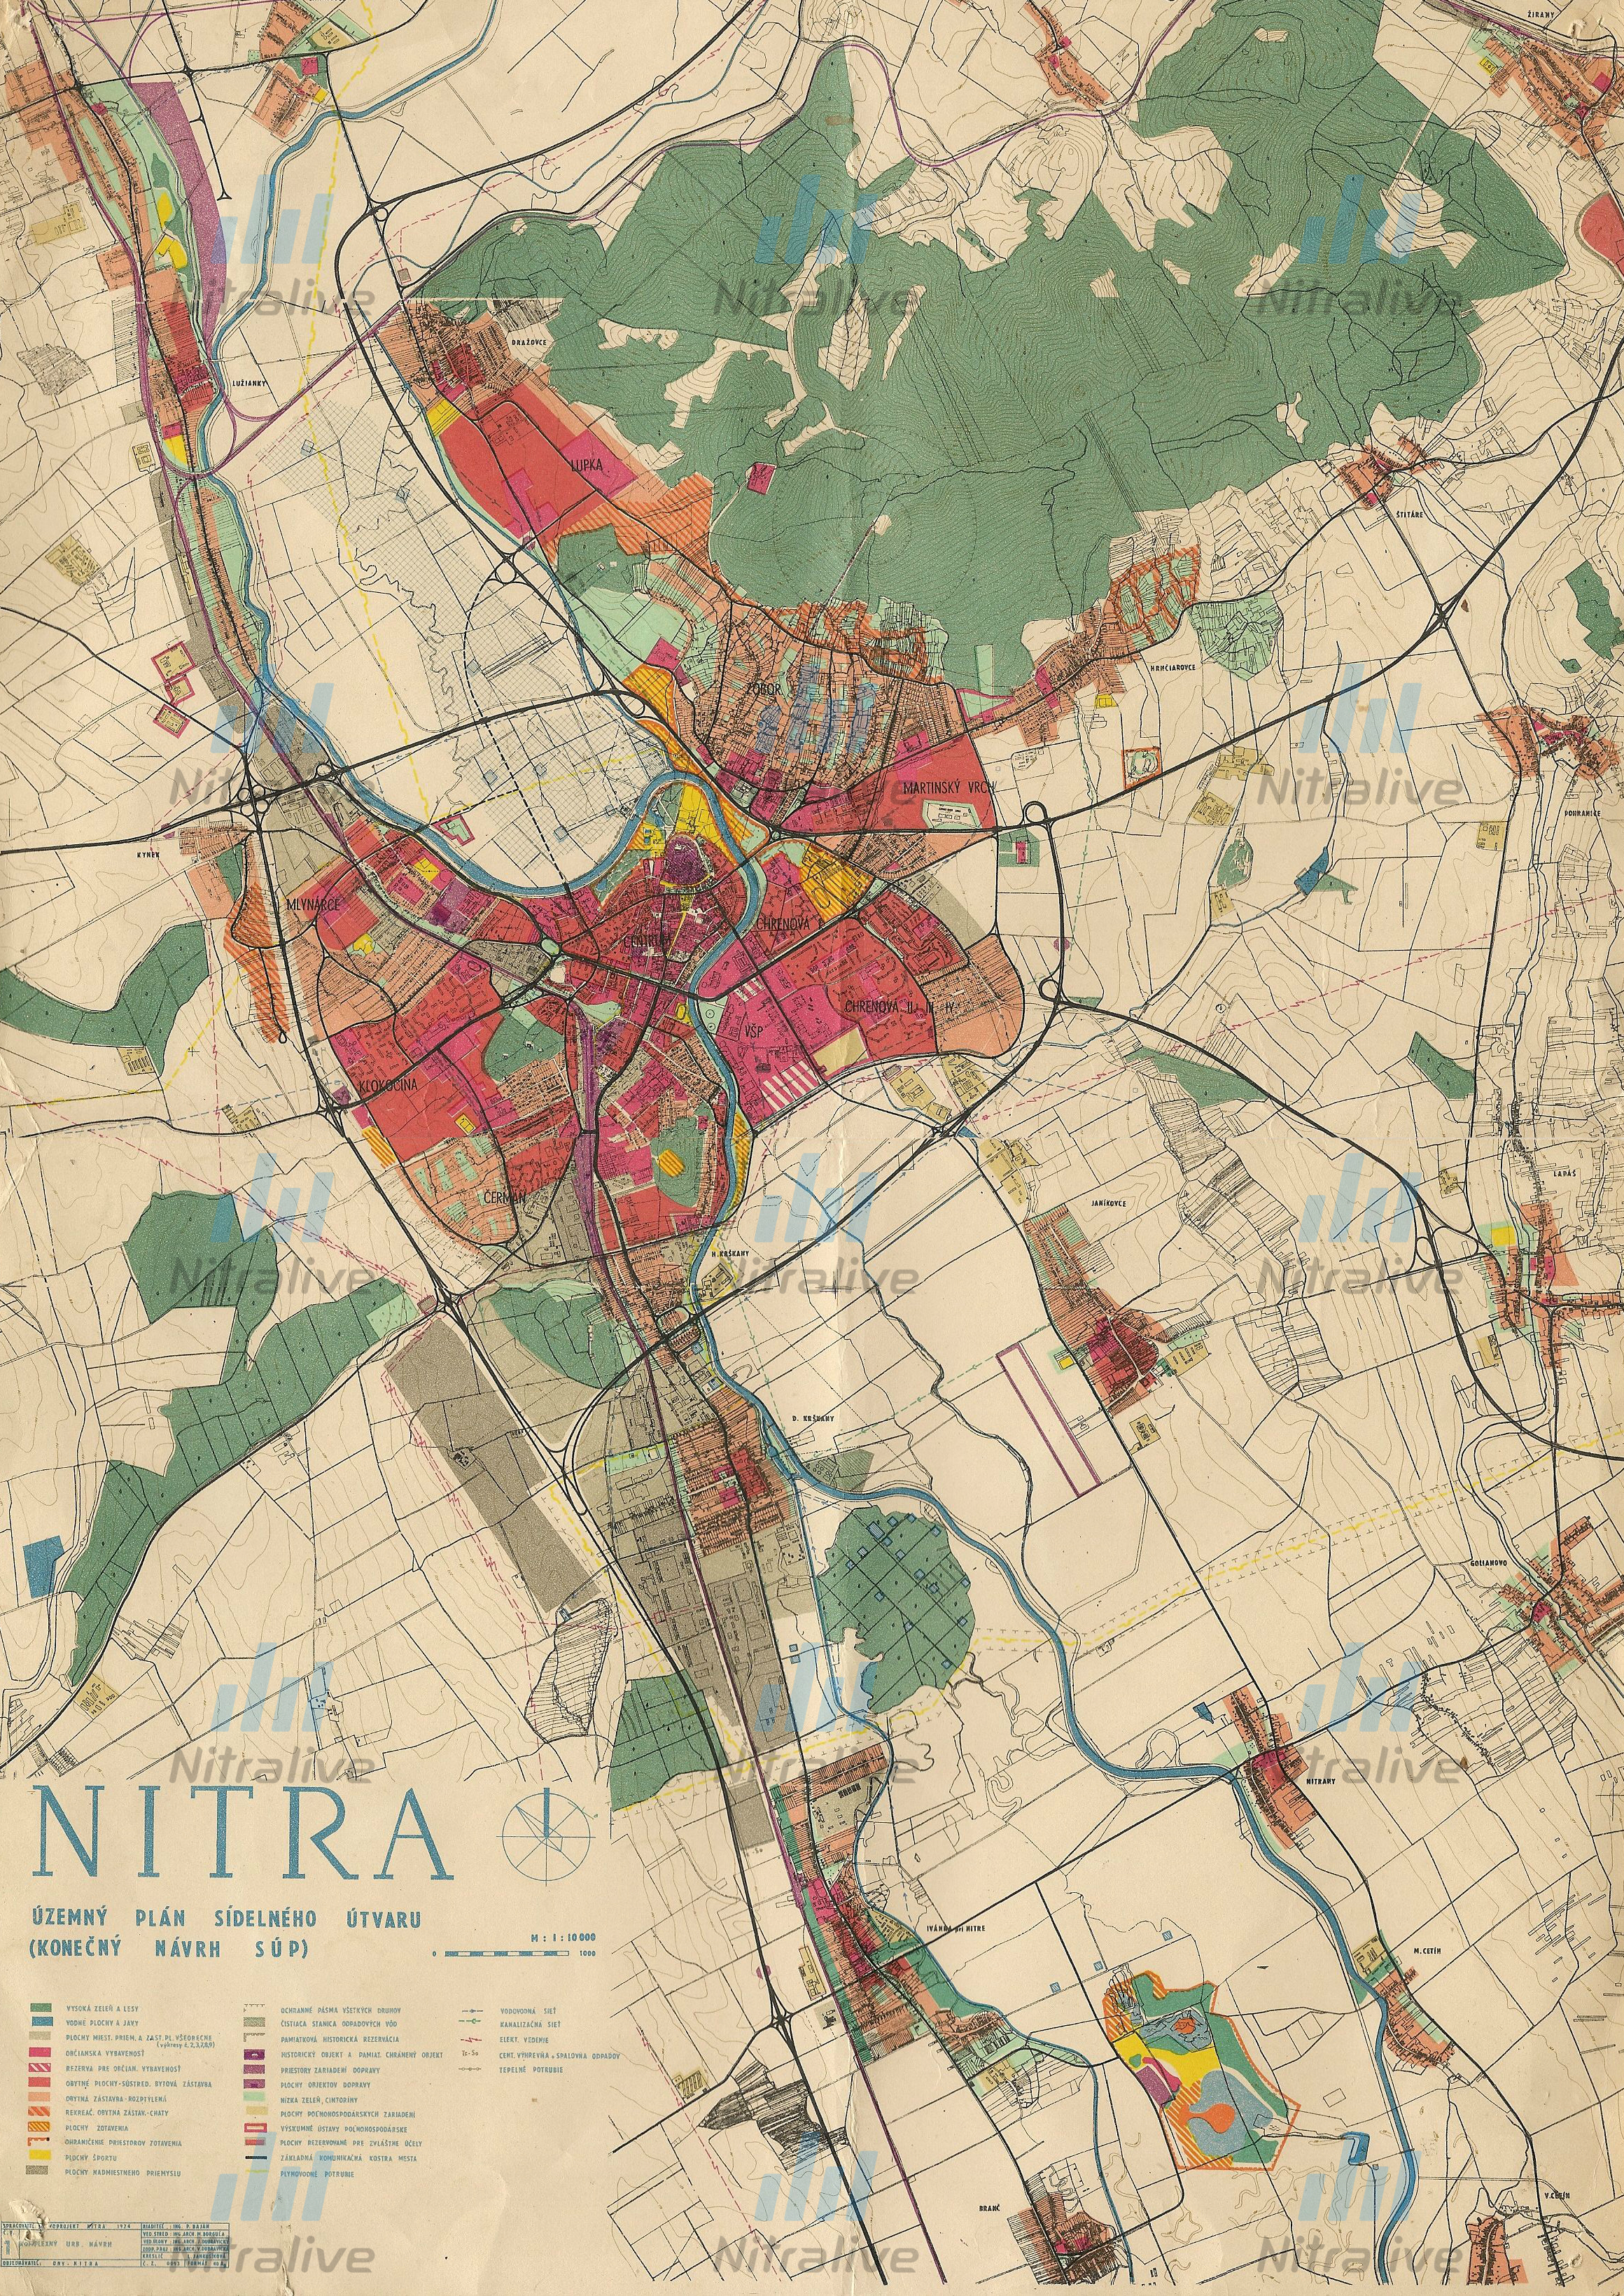 Územný plán Nitry z roku 1974